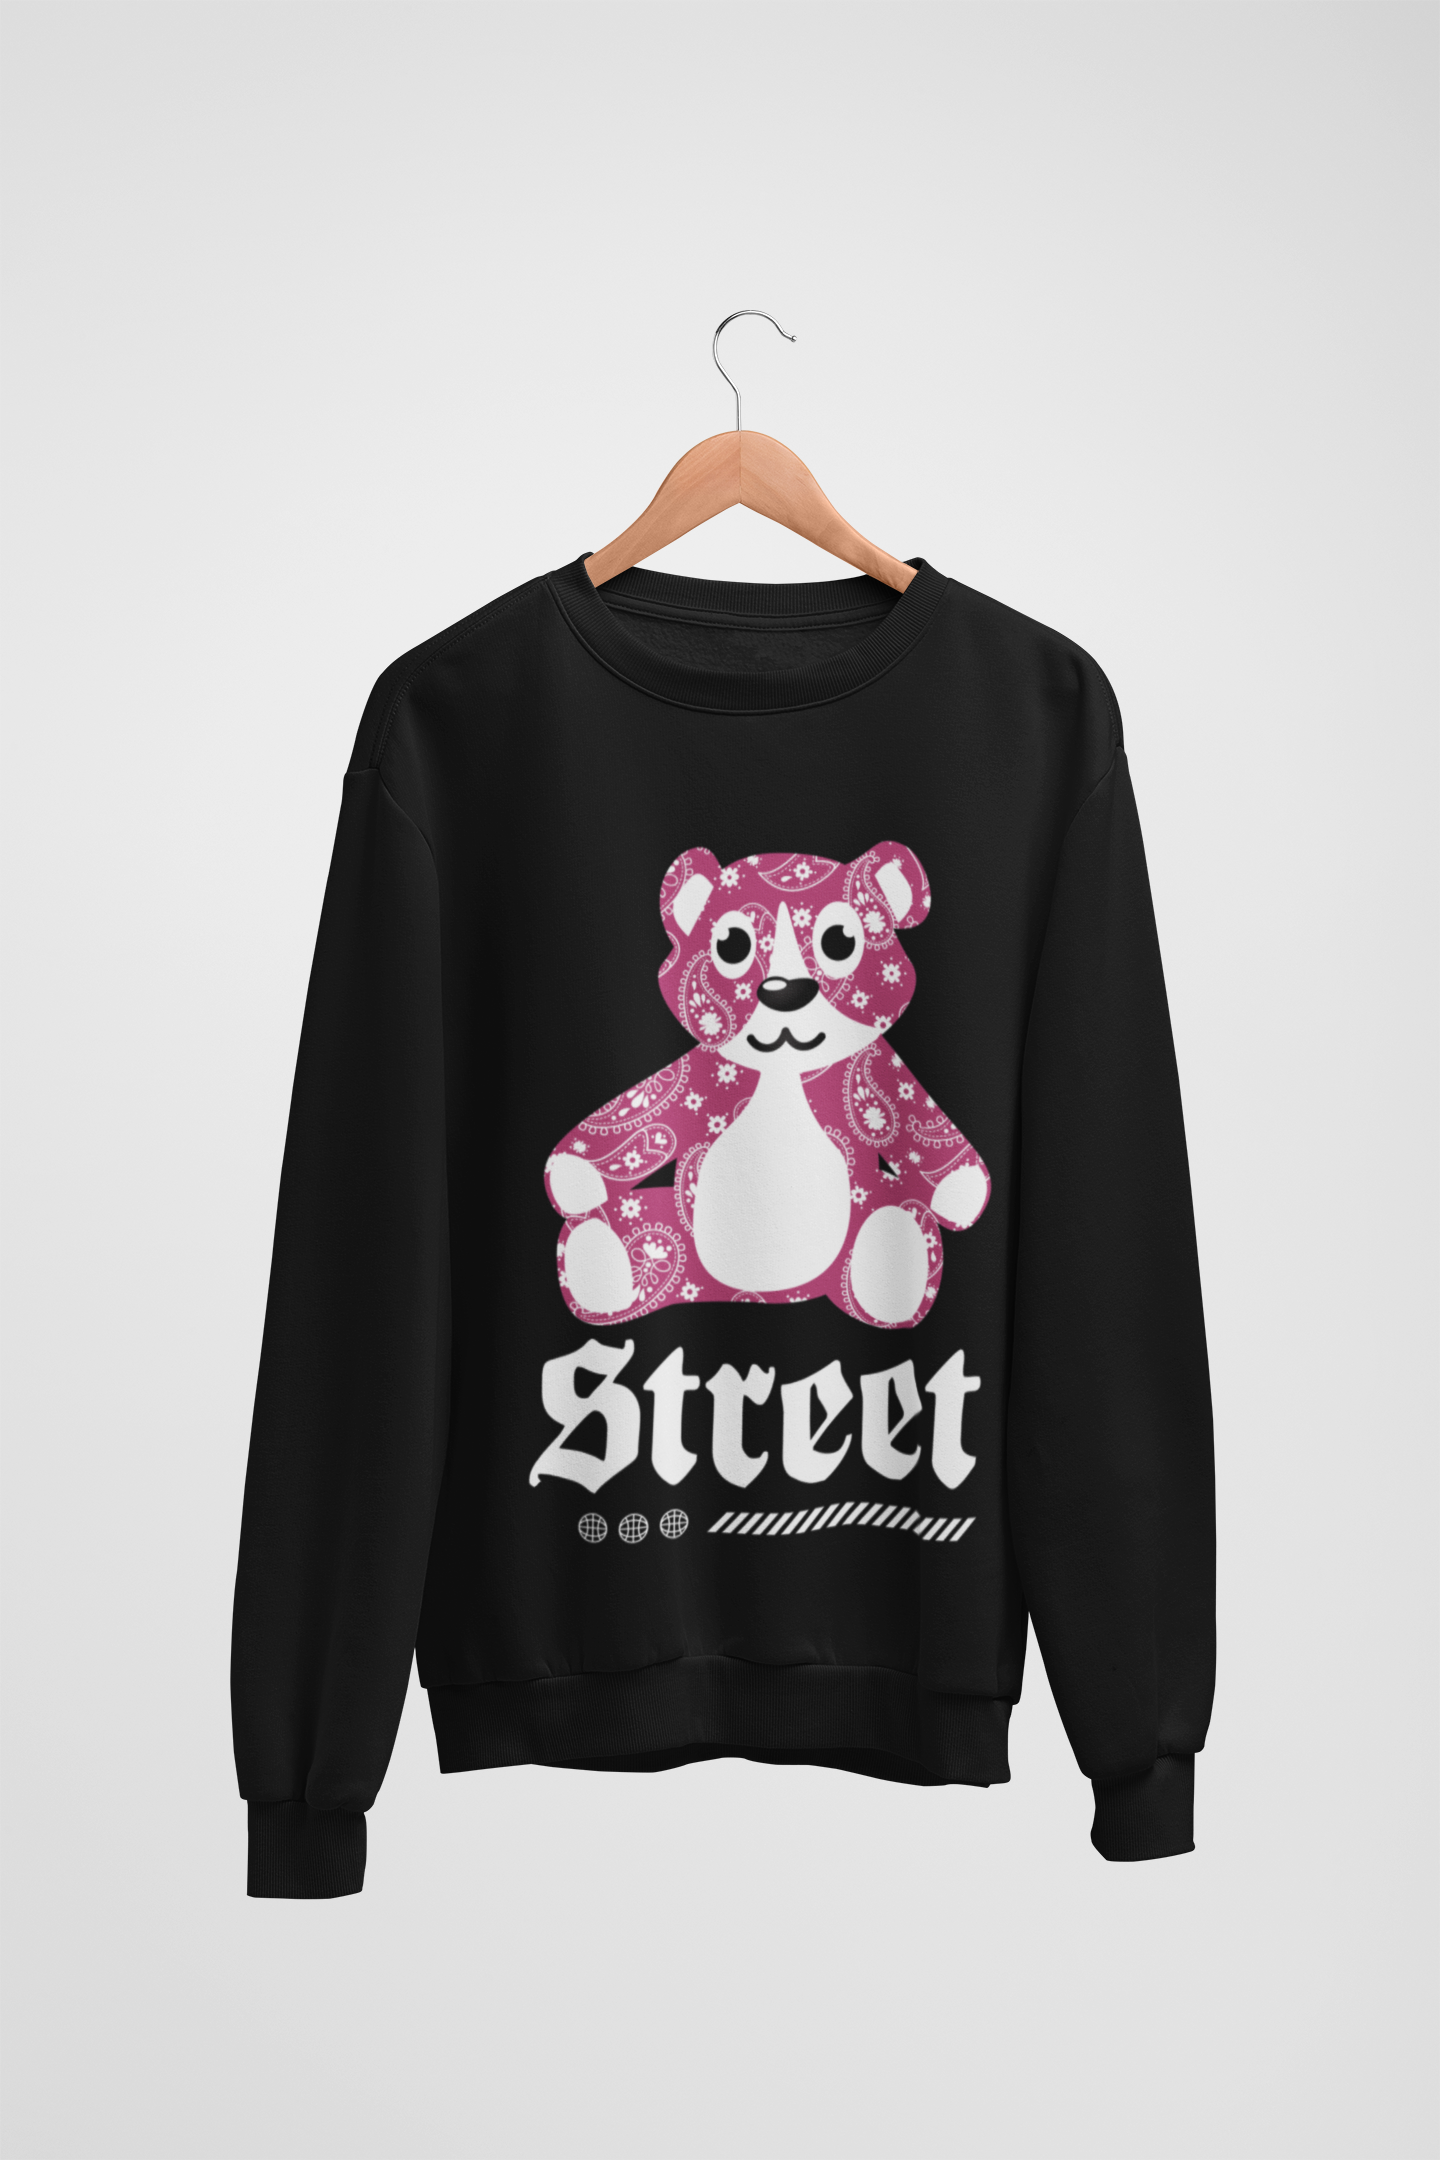 Street Teddy Bear Black Sweatshirt For Women